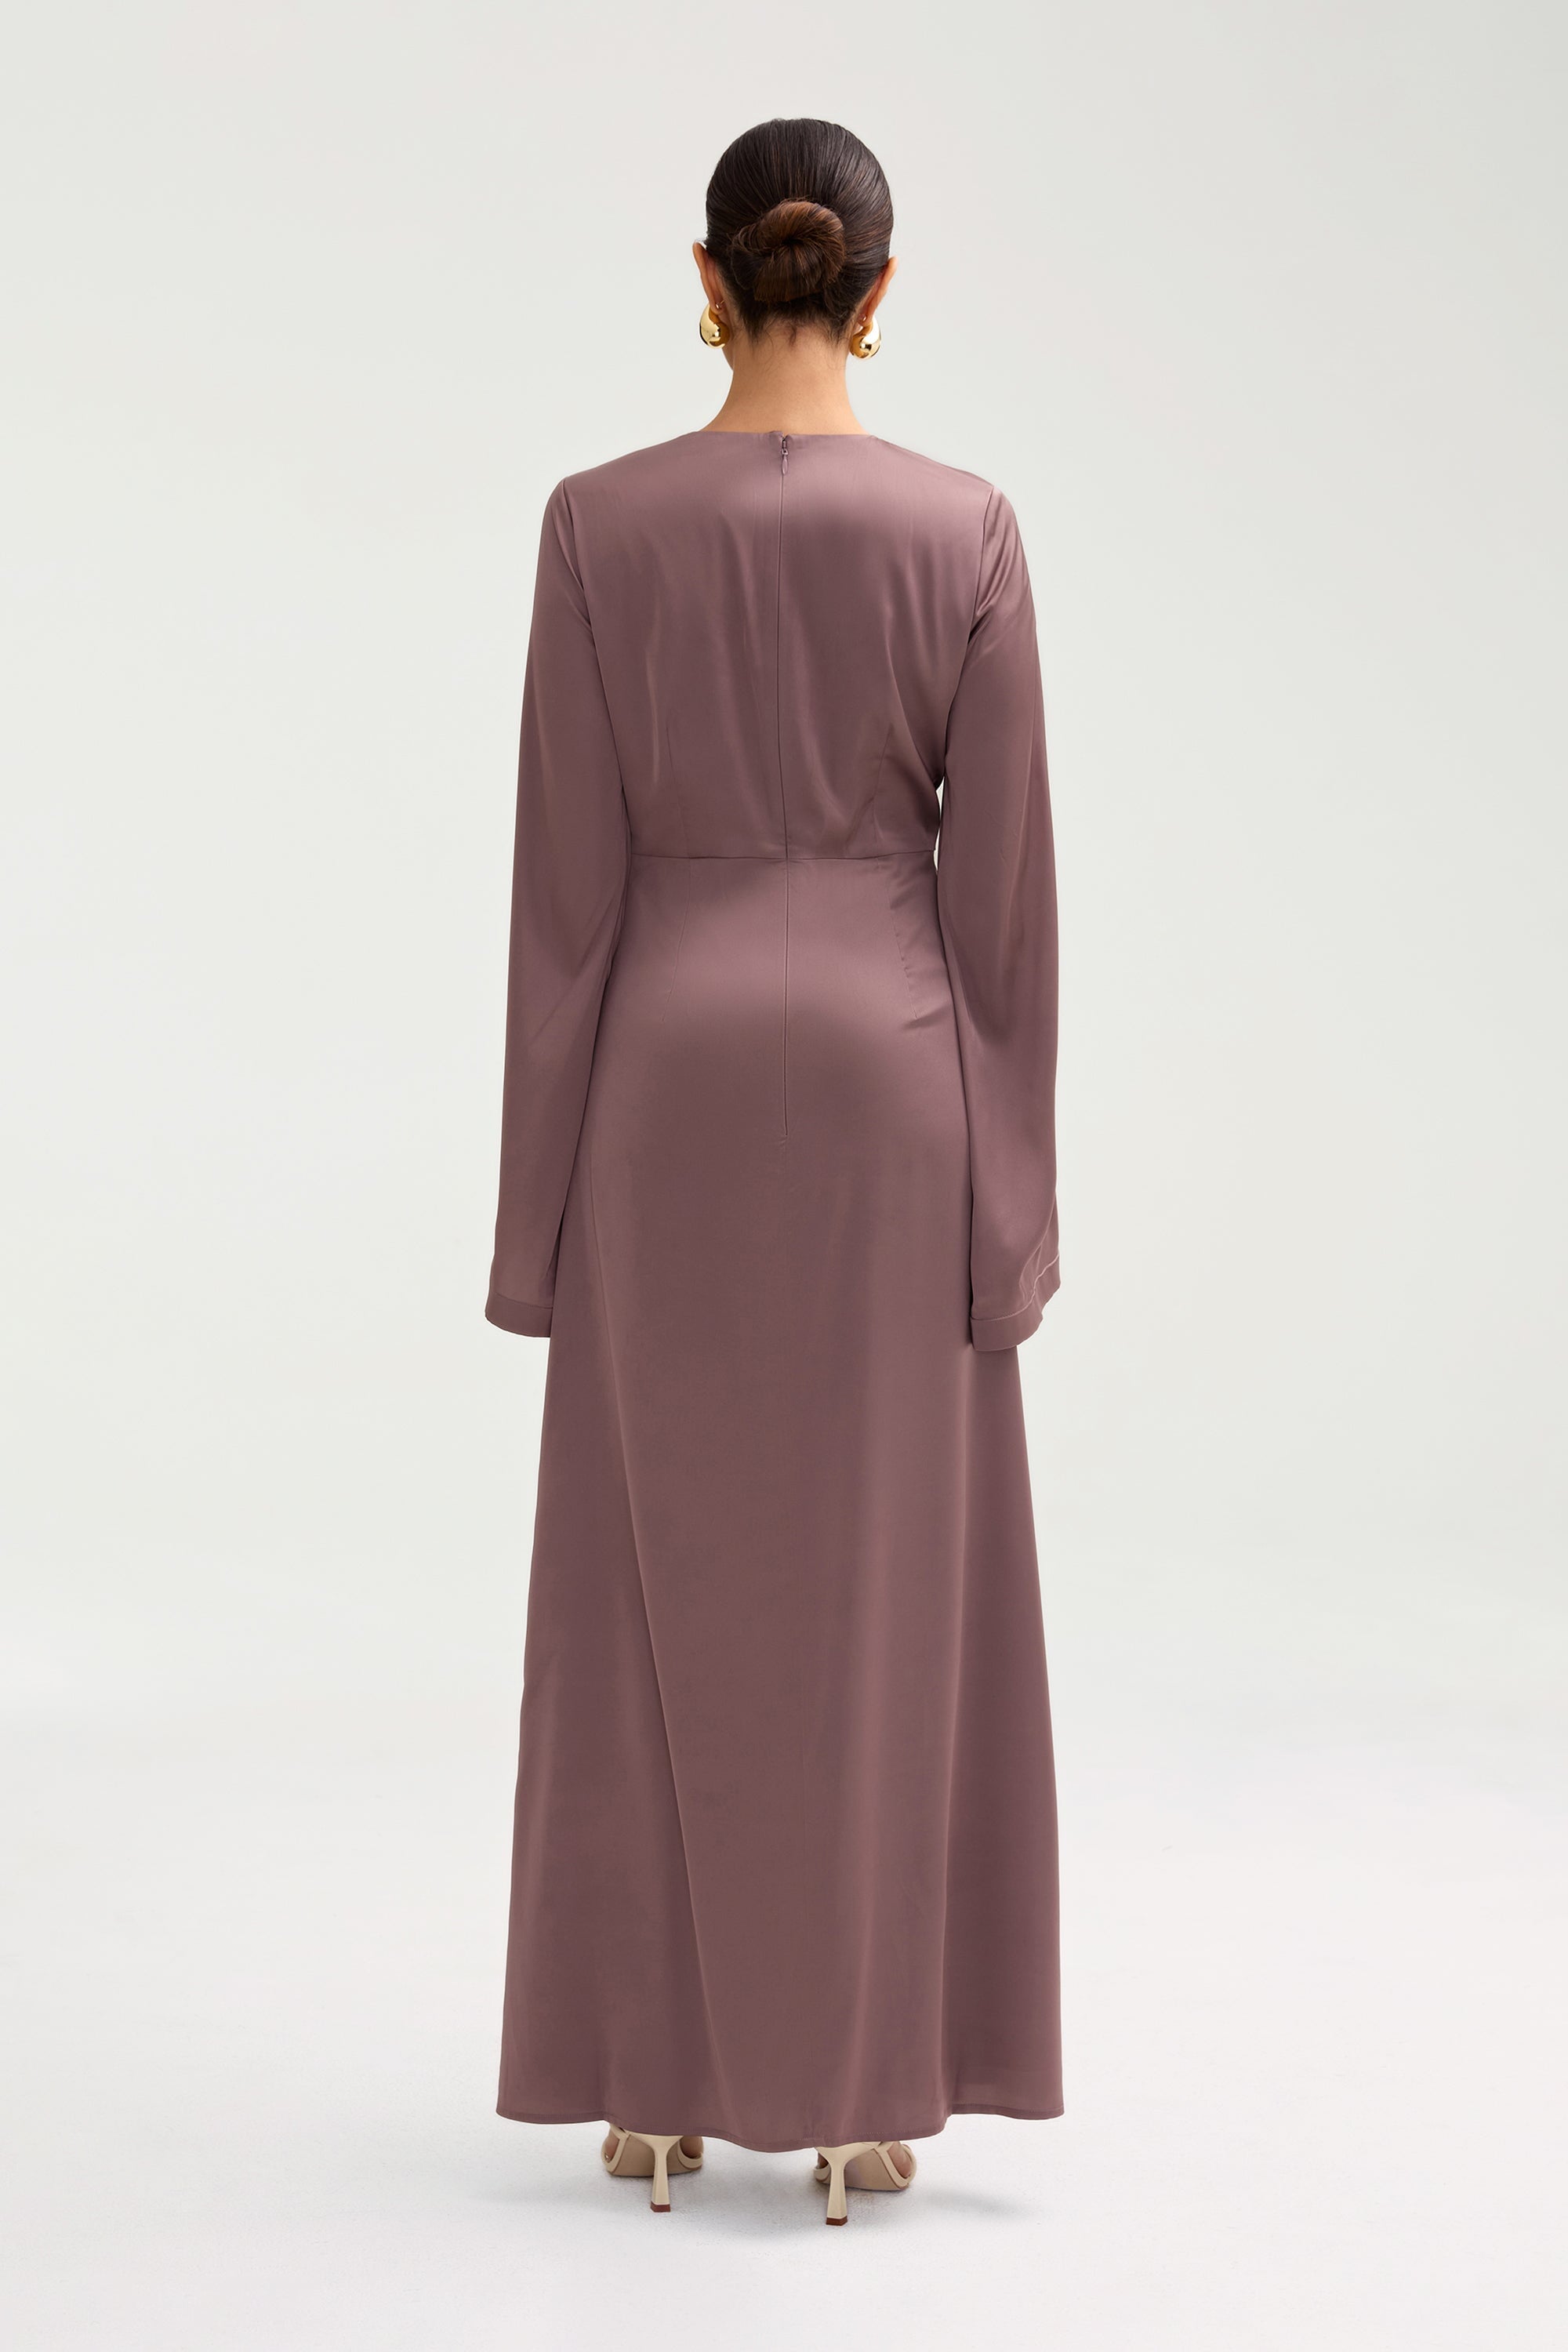 Duha Satin Twist Front Maxi Dress - Deep Taupe Clothing Veiled 